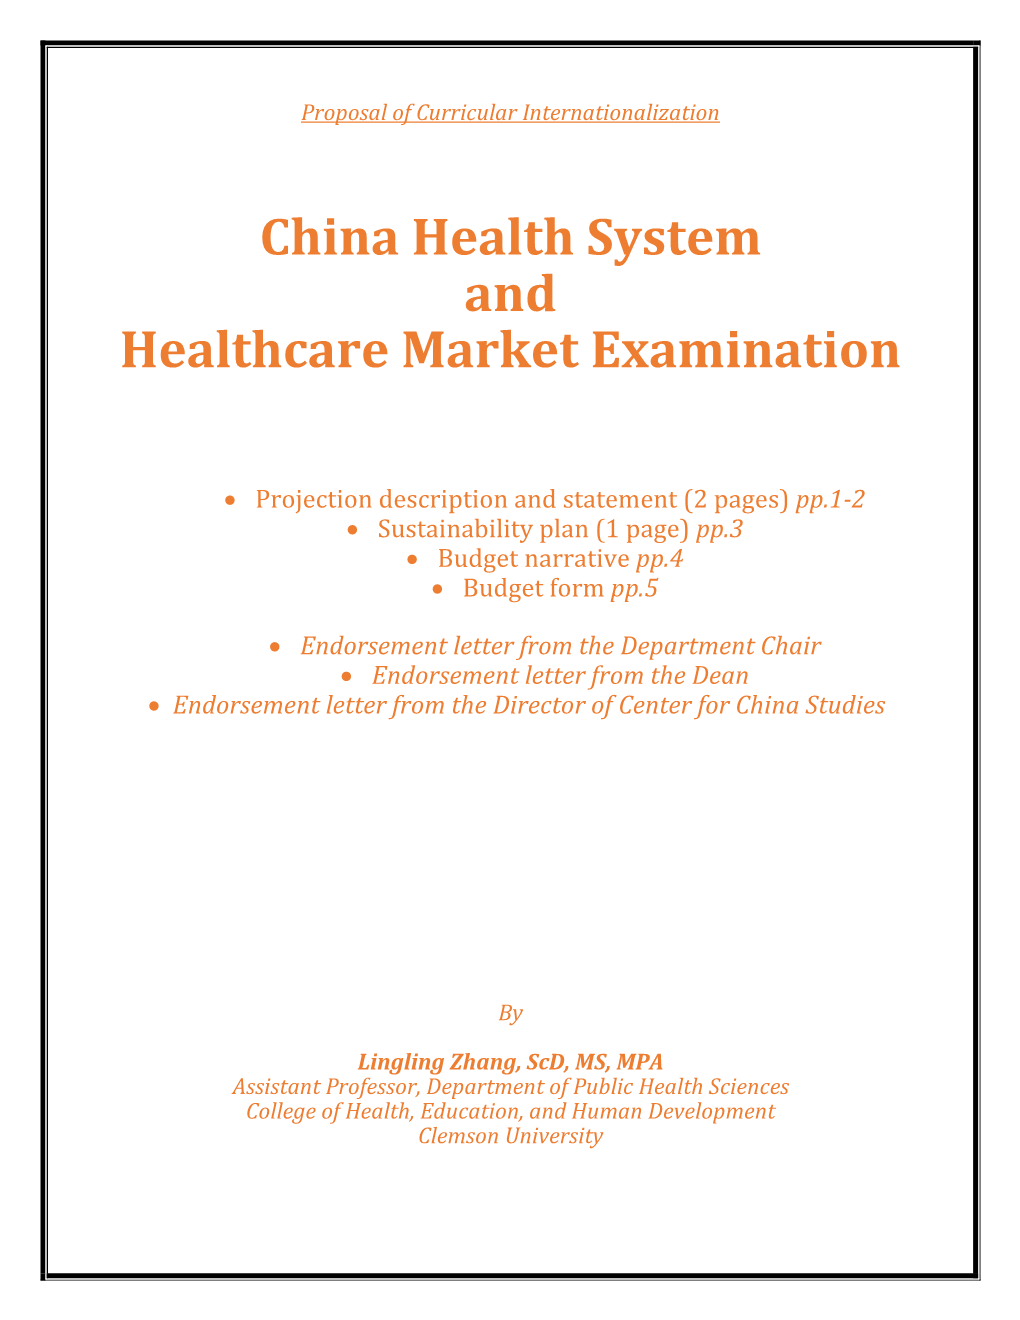 China Health System and Healthcare Market Examination